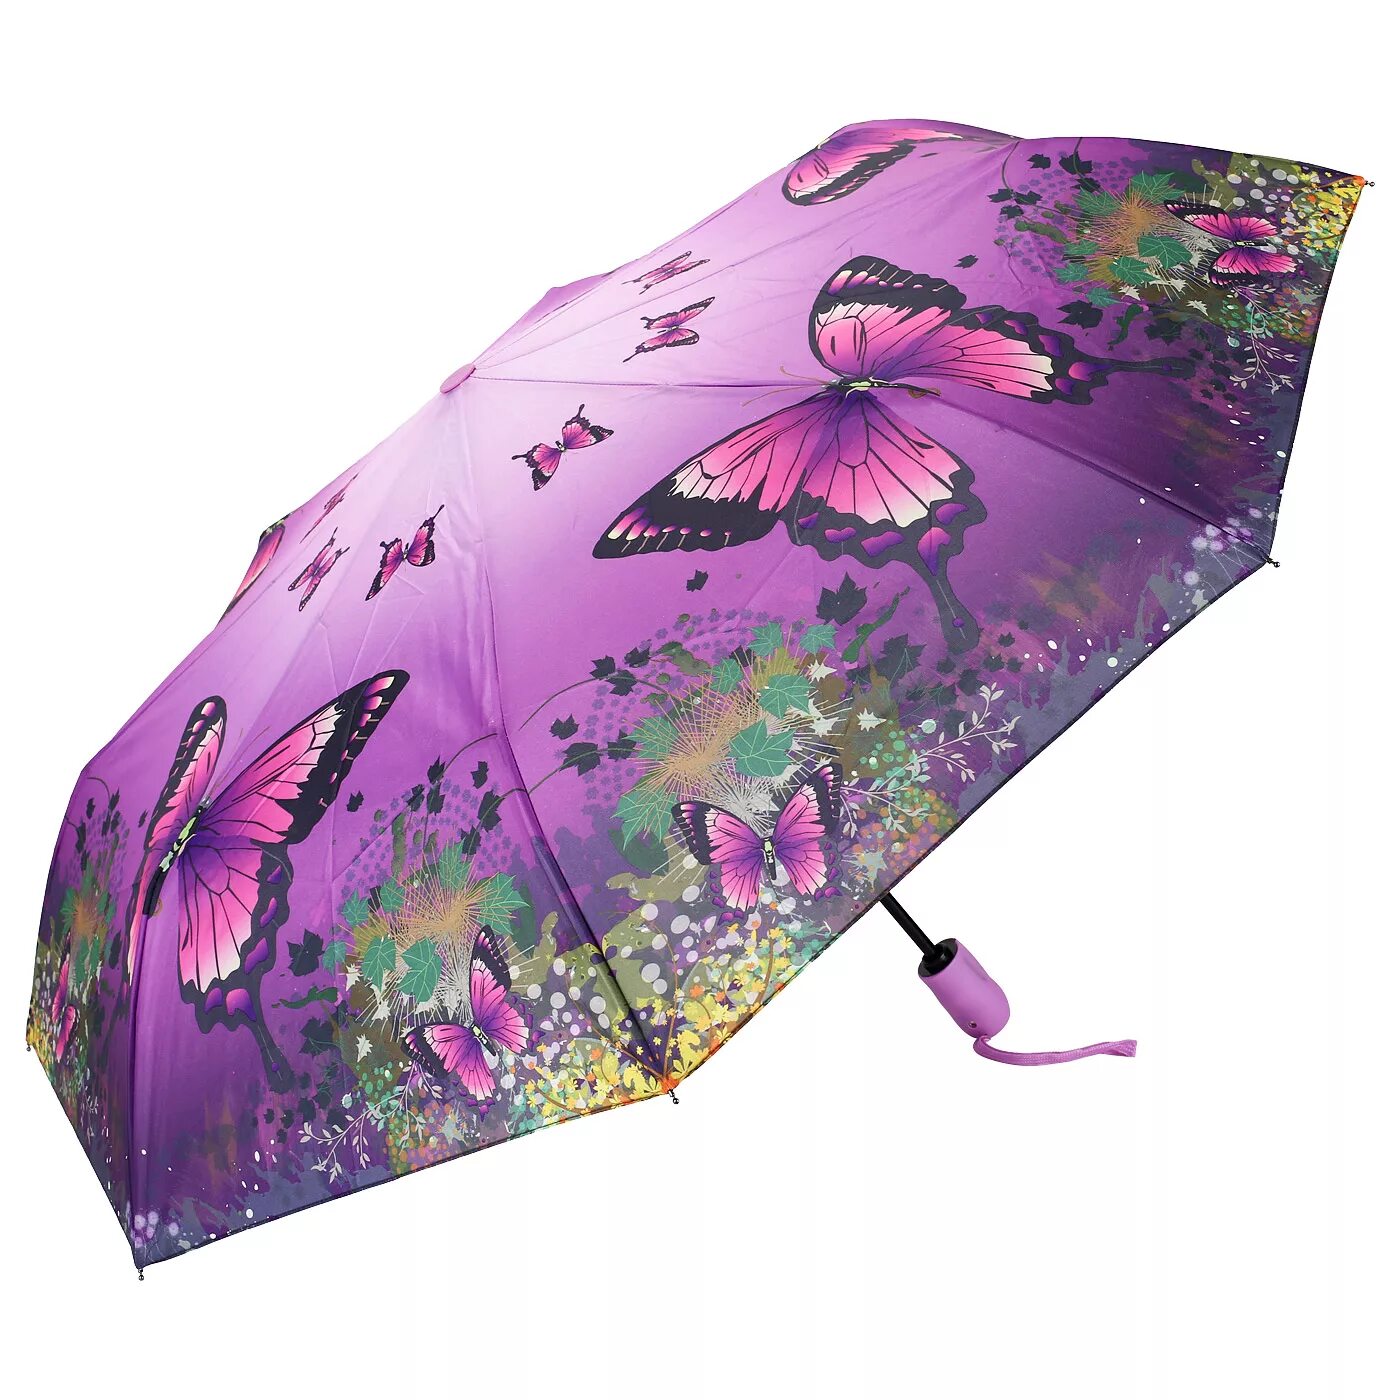 Trust 32472 зонт бабочки. Francesco Marconi зонты женские. Озон зонты женские. Зонты женские с бабочками. Купить зонт женский на озон